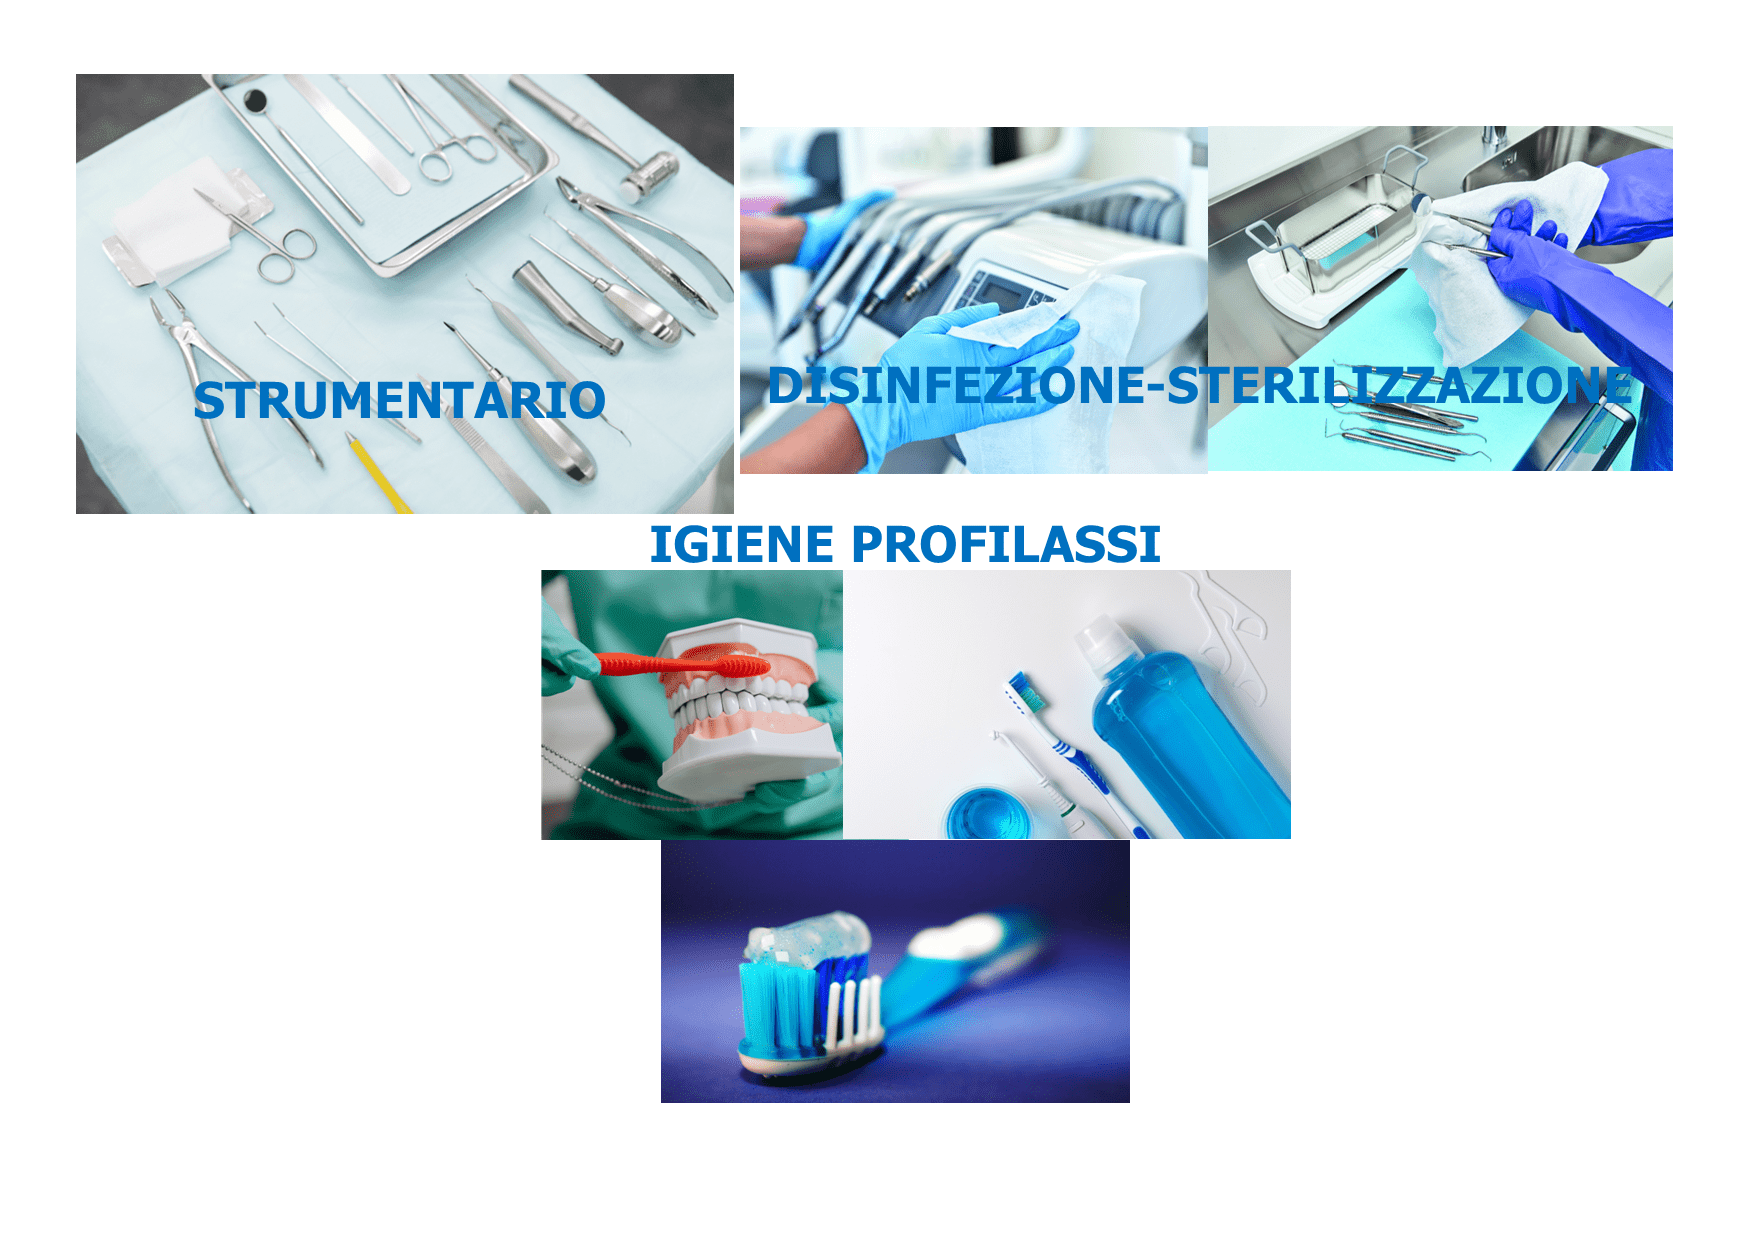 Promo Strumentario-Disinfezione Sterilizzazione-Igiene e Profilassi